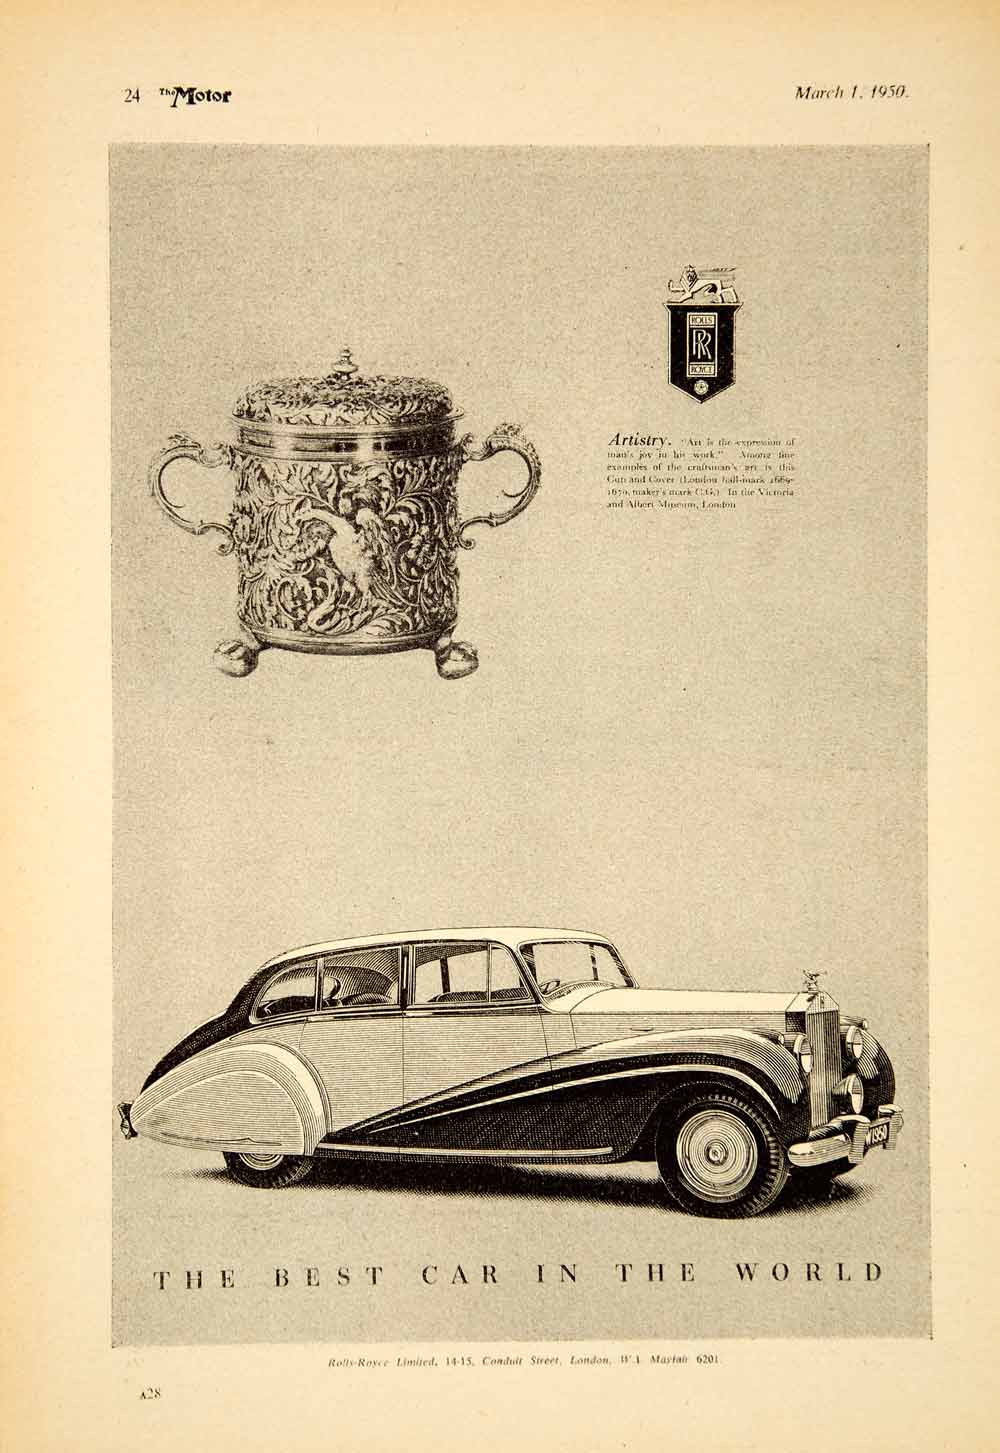 1950 Ad Rolls Royce Phantom IV Luxury Car Classic Automobile British Import YTM5